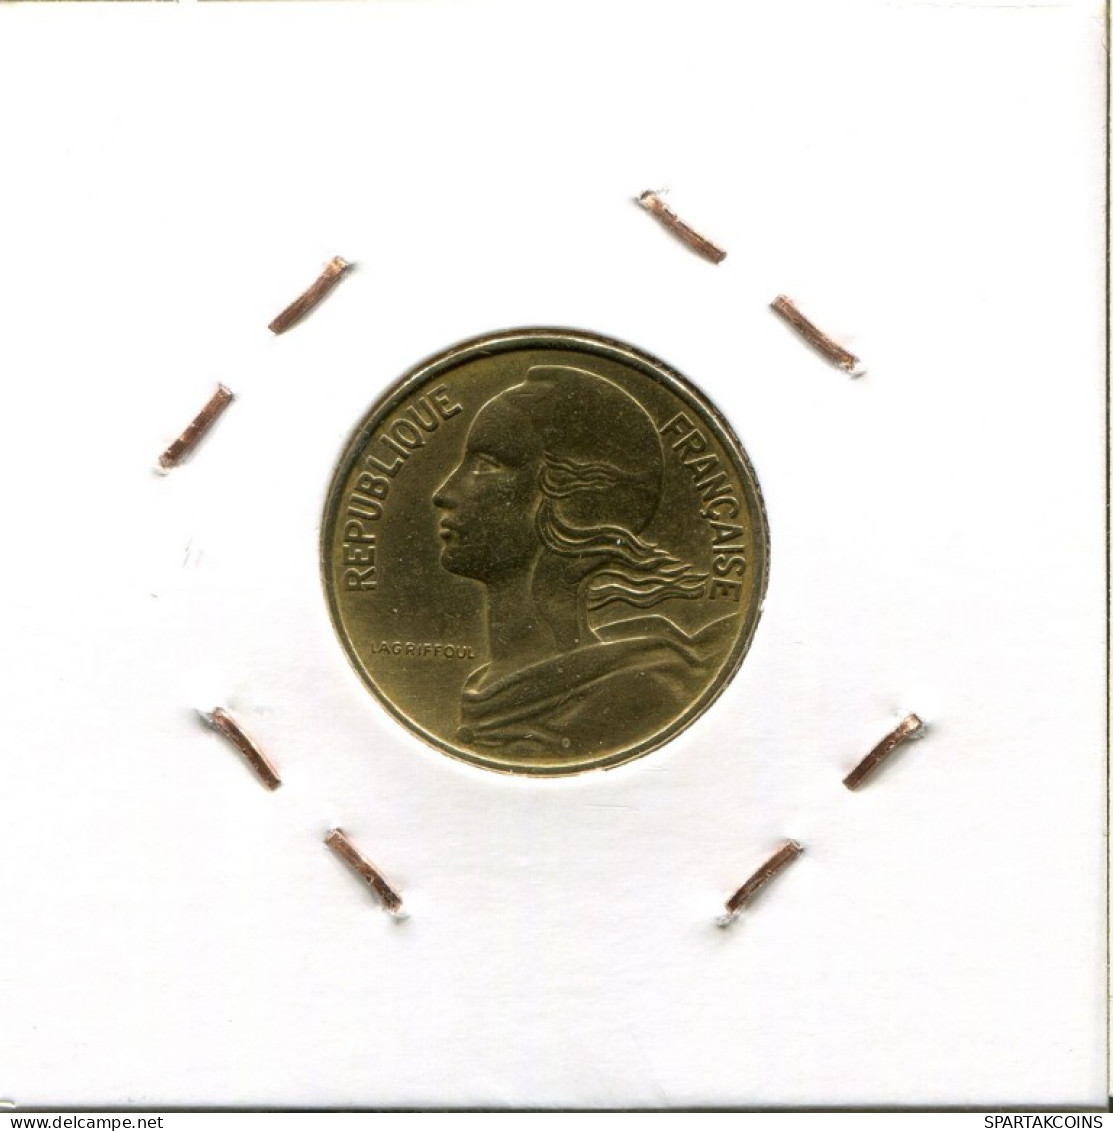 10 CENTIMES 1977 FRANCIA FRANCE Moneda #AM818.E.A - 10 Centimes